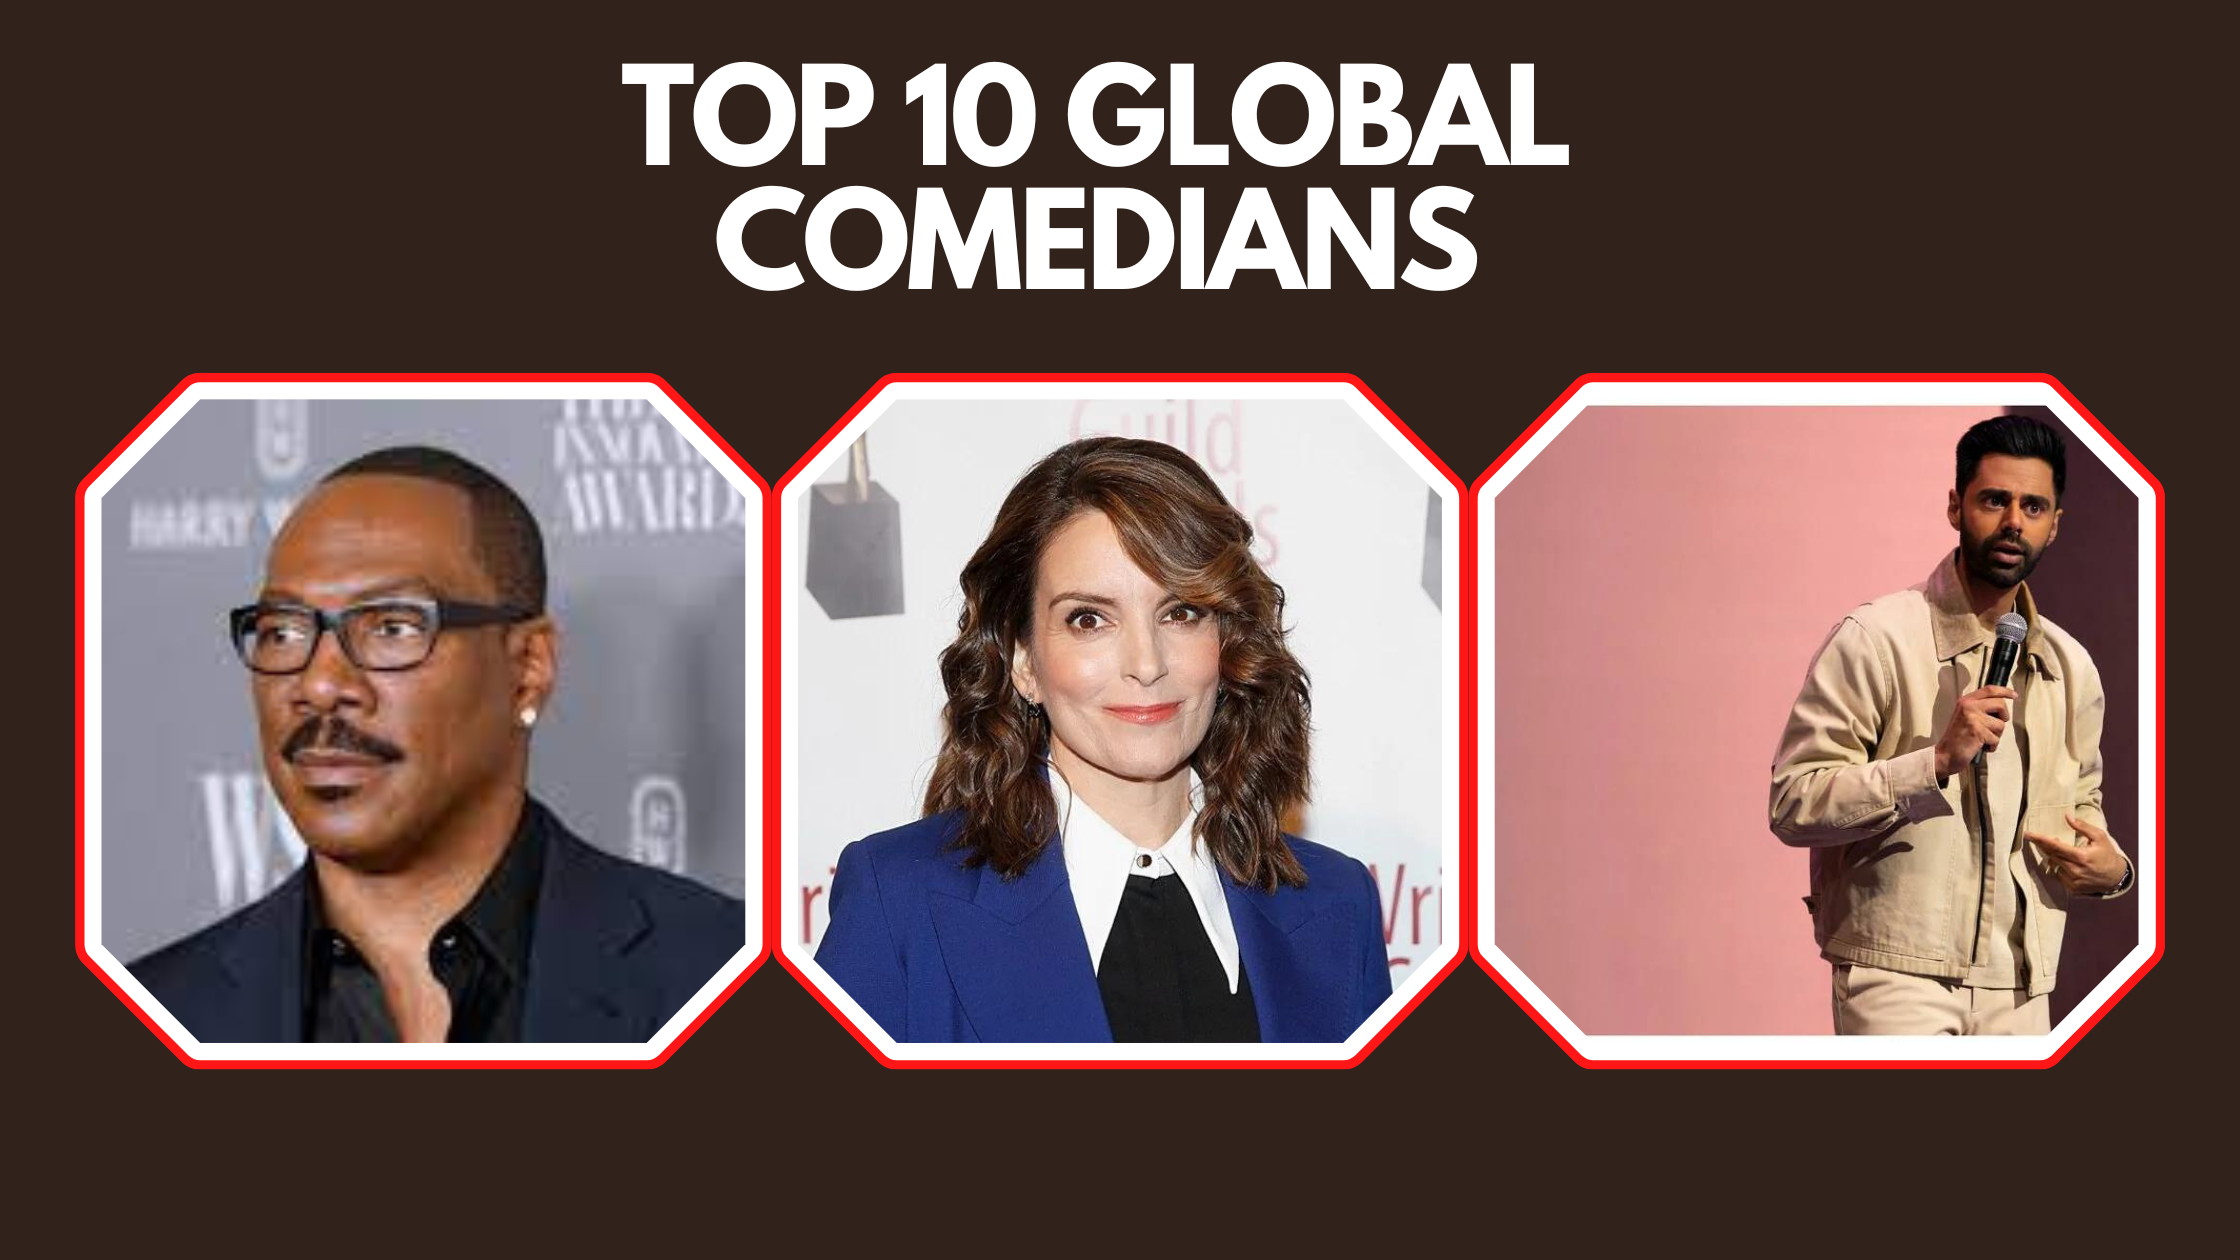 Top 10 Global Comedians - Top 10 Global Comedians